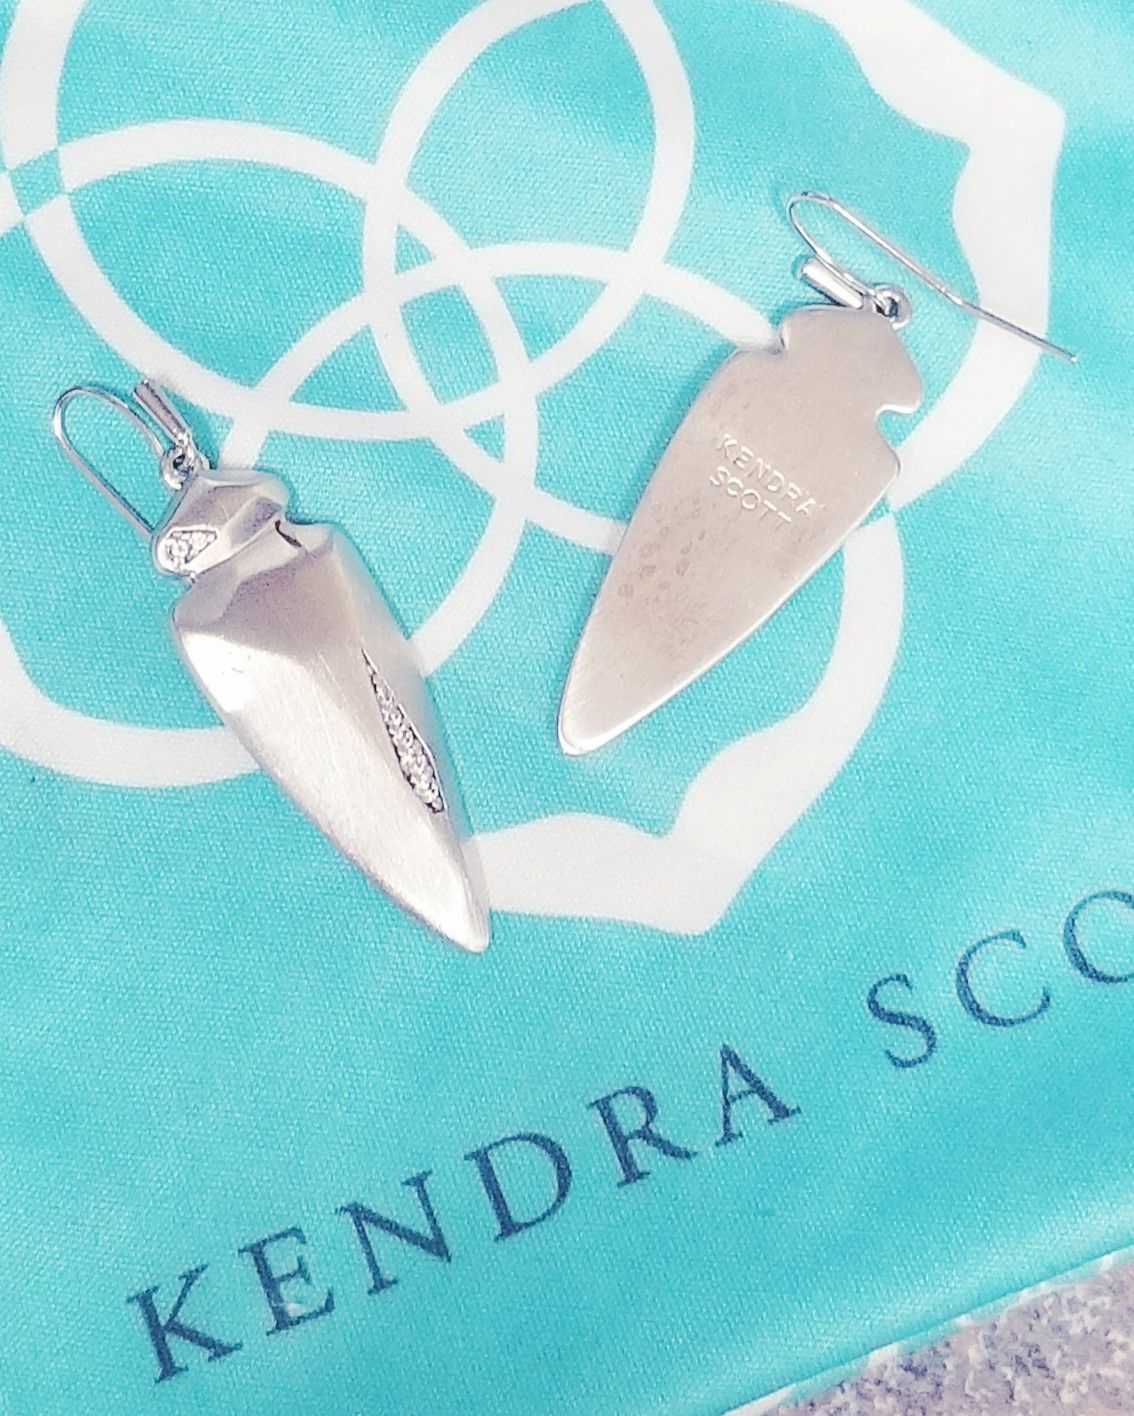 Kendra Scott dagger earrings